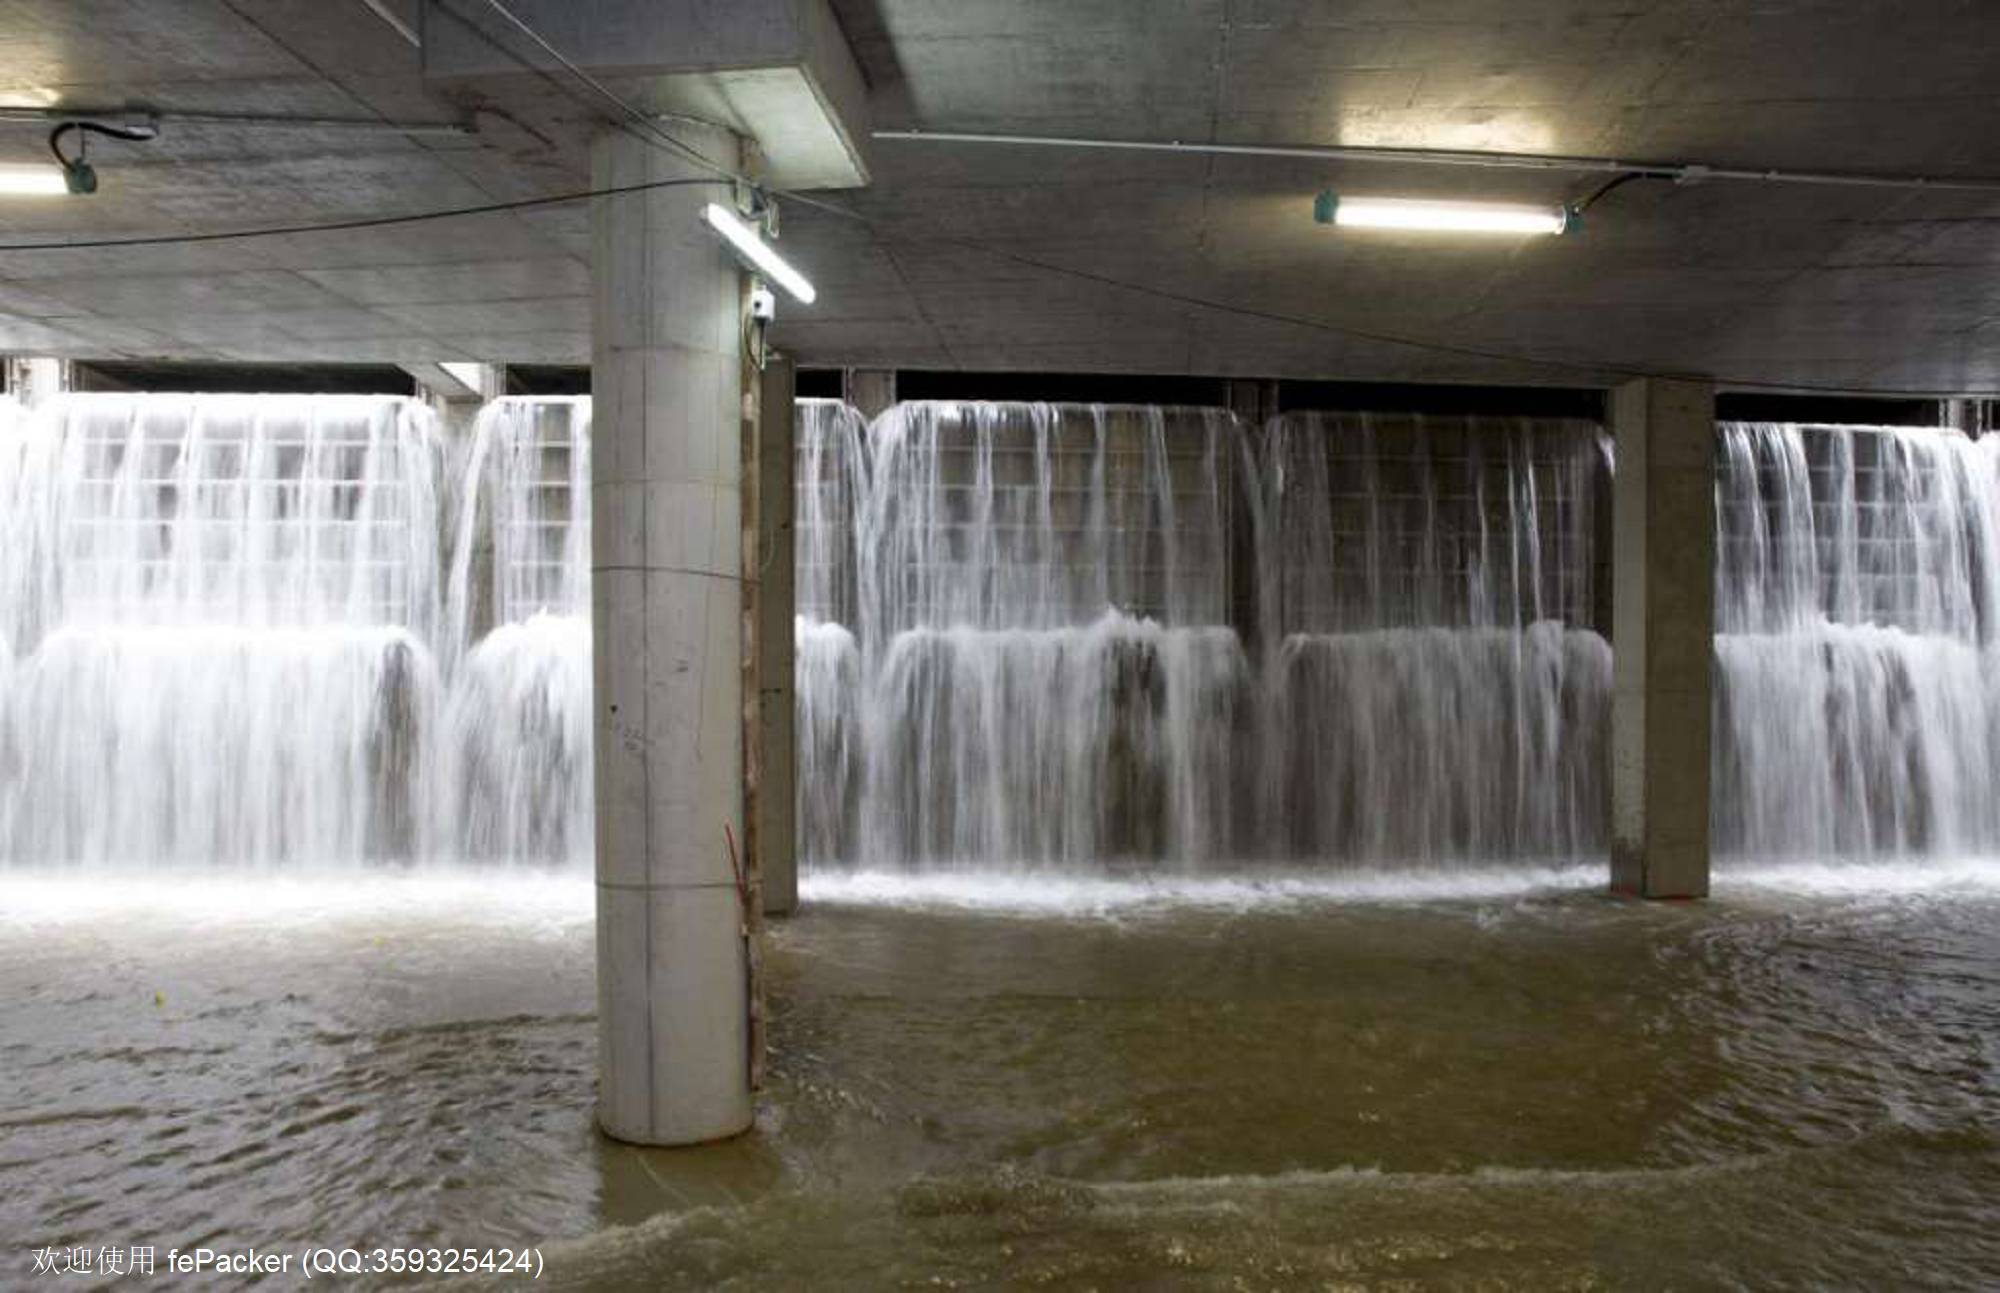 蓄洪池内的智能水闸开启后，雨水从箱型暗渠流入.jpg